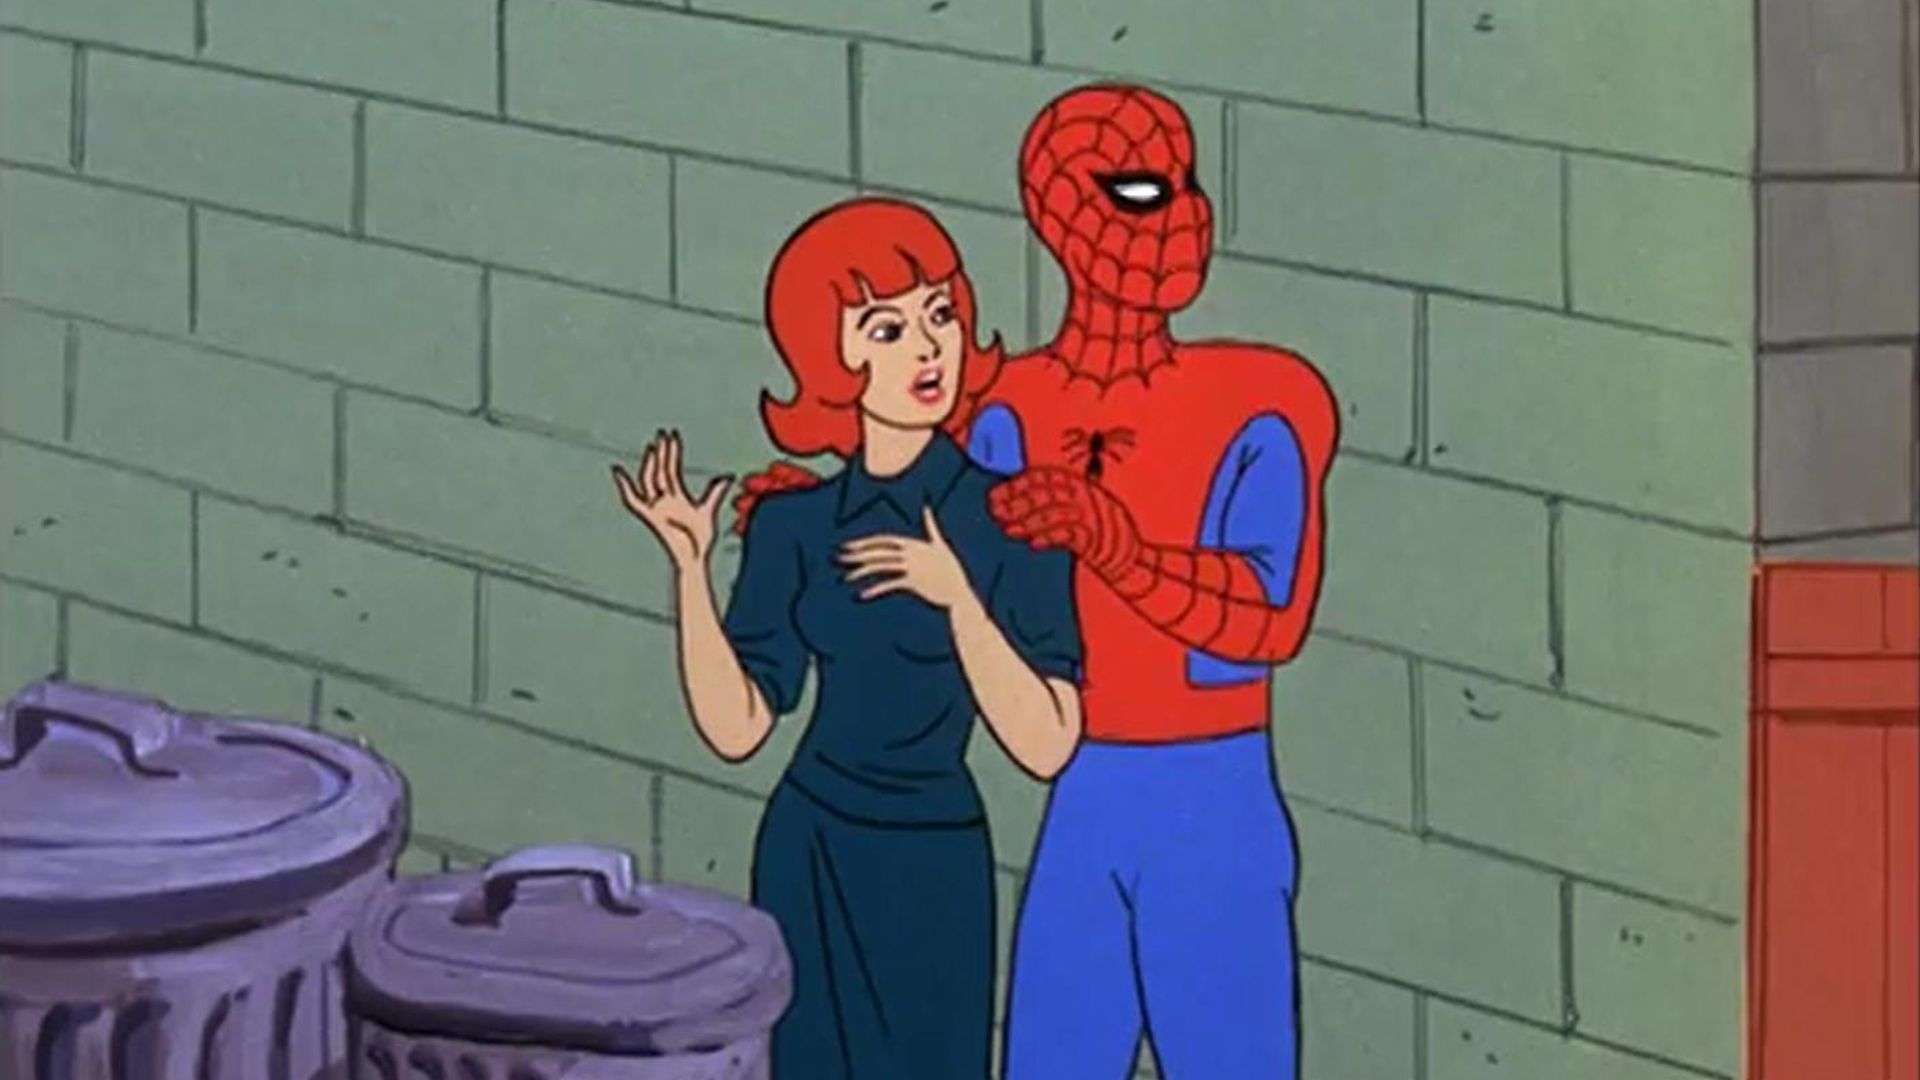 Spider-Man background